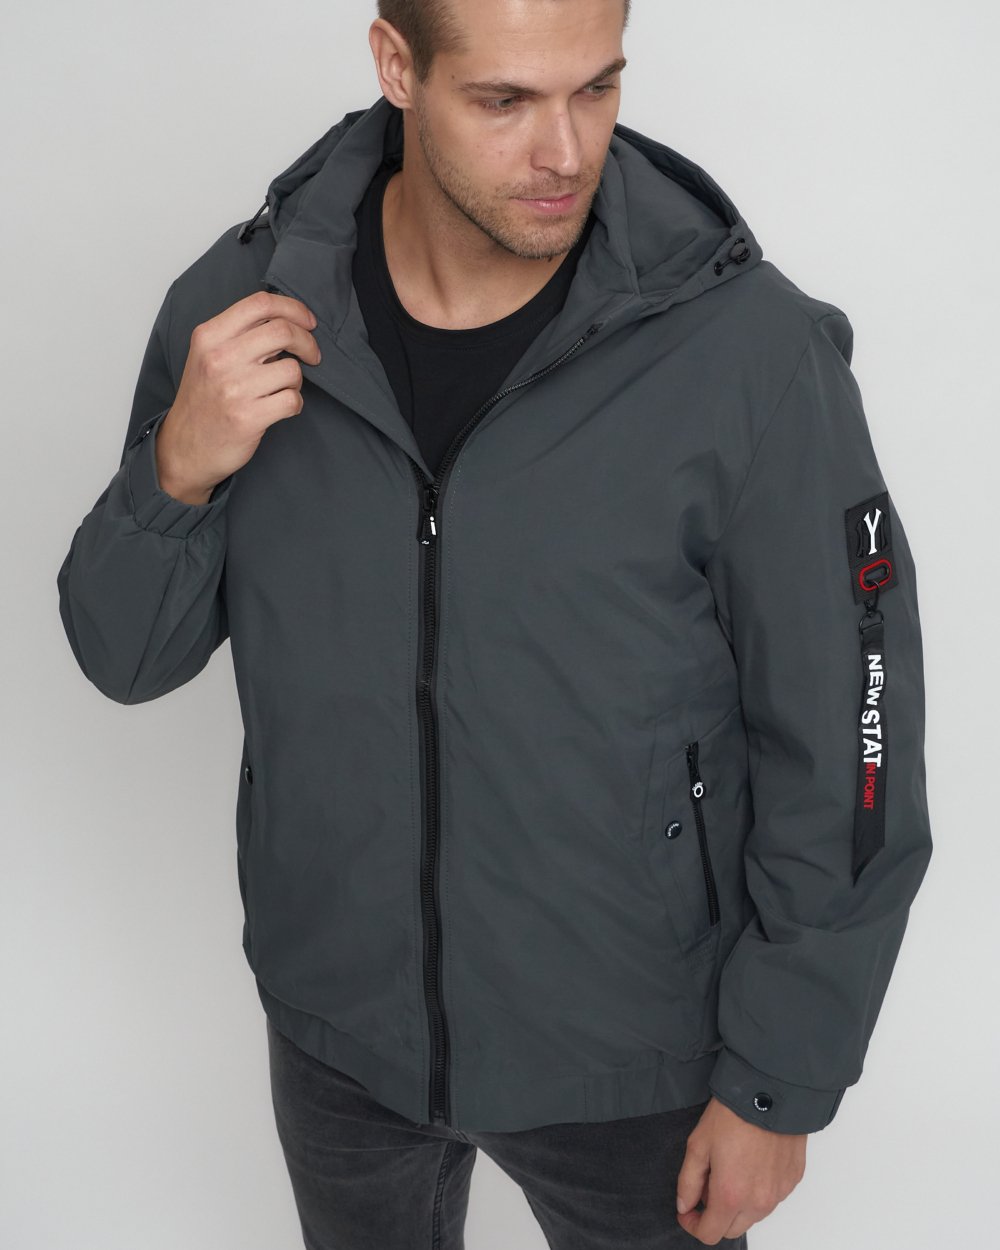 Купить куртку мужскую большого размера оптом от производителя недорого в Москве 88657Sr 1